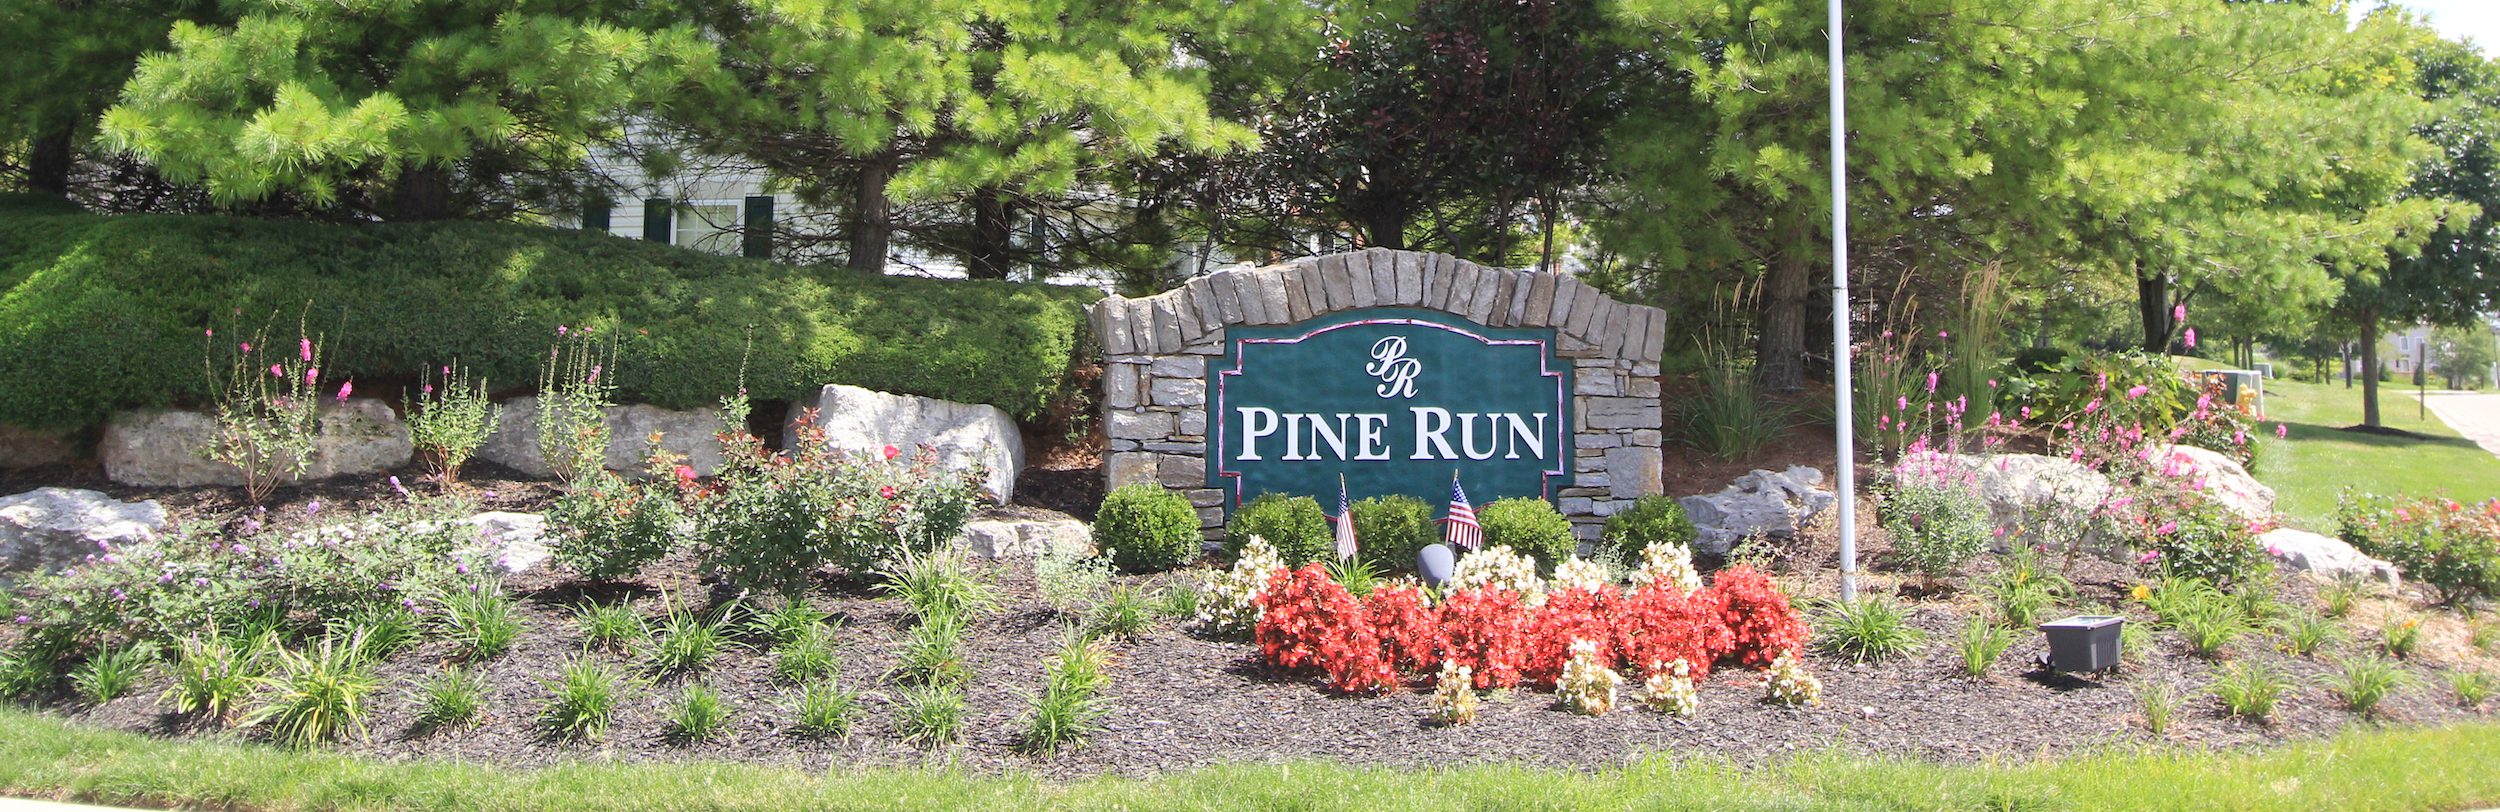 Pine Run 01